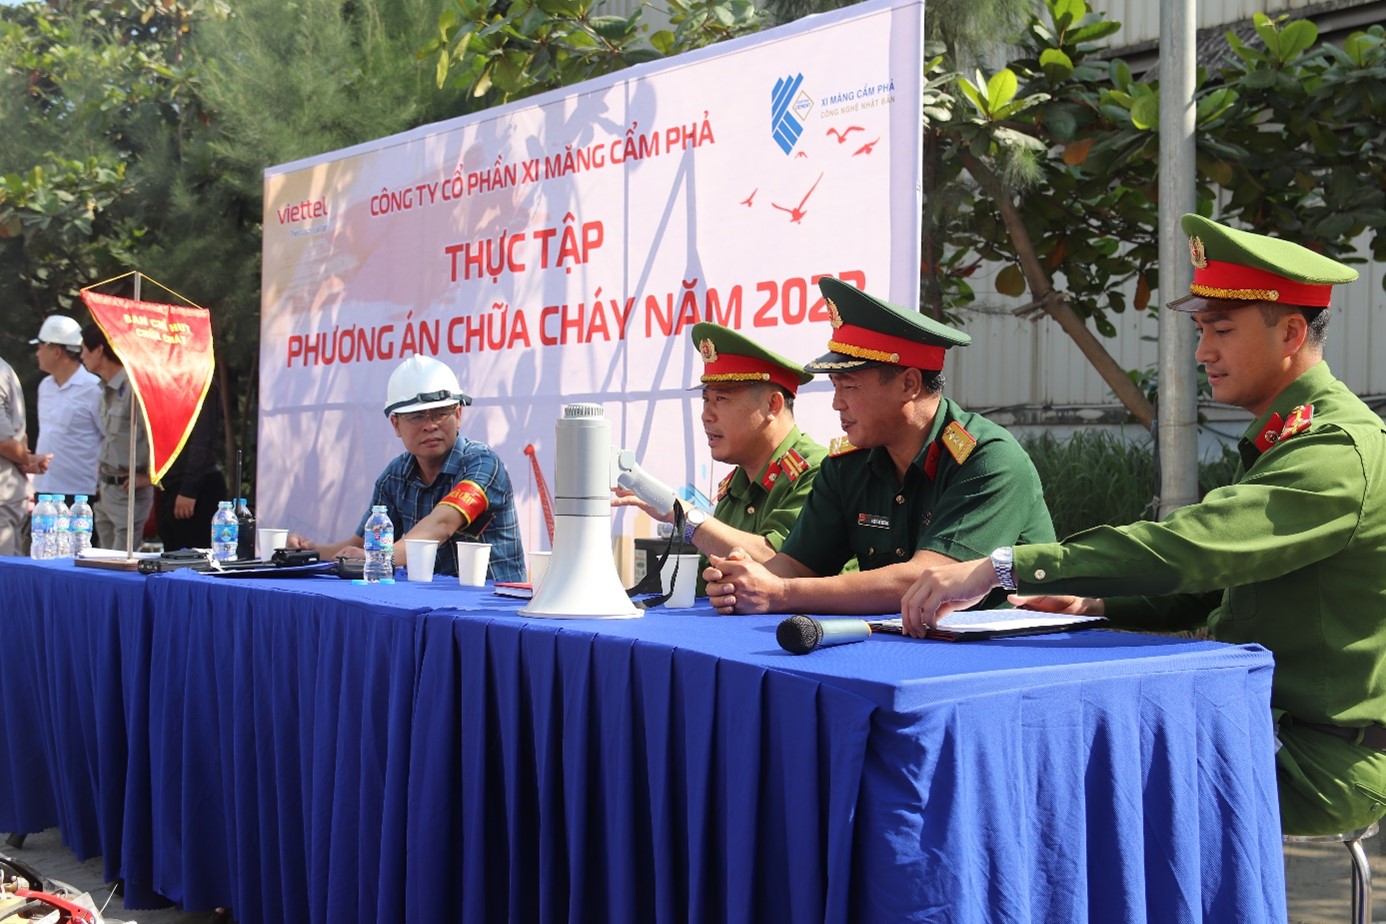 Xi măng Cẩm Phả tổ chức tuyên truyền, thực tập phương án chữa cháy, cứu nạn cứu hộ năm 2023